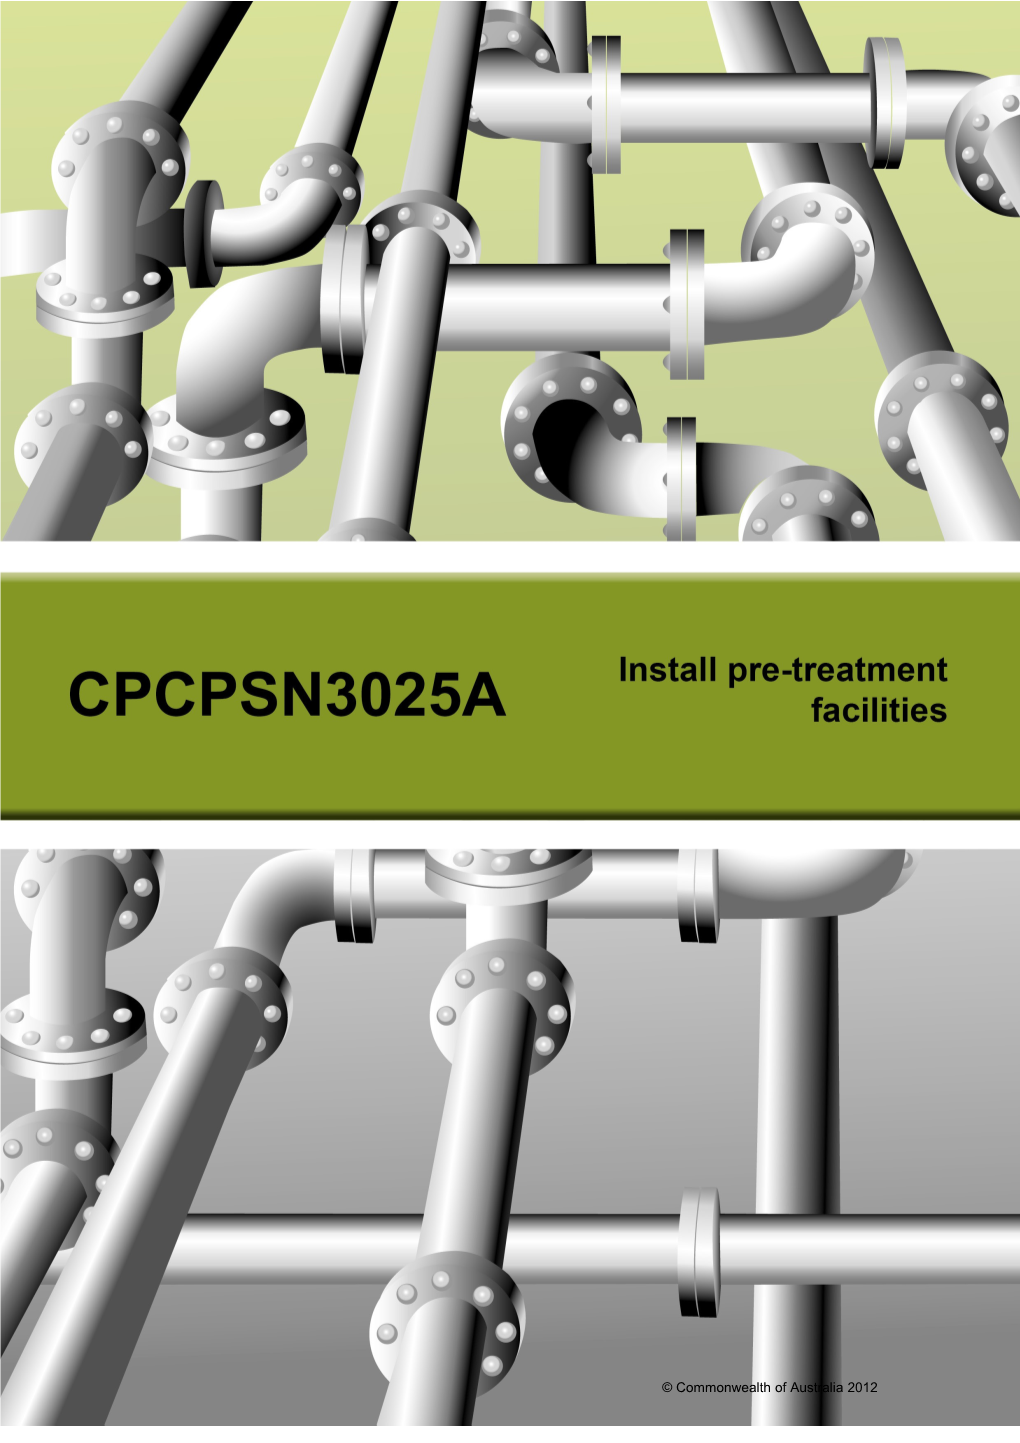 Cpcpsn3025a - Install Pre-Treatment Facilities